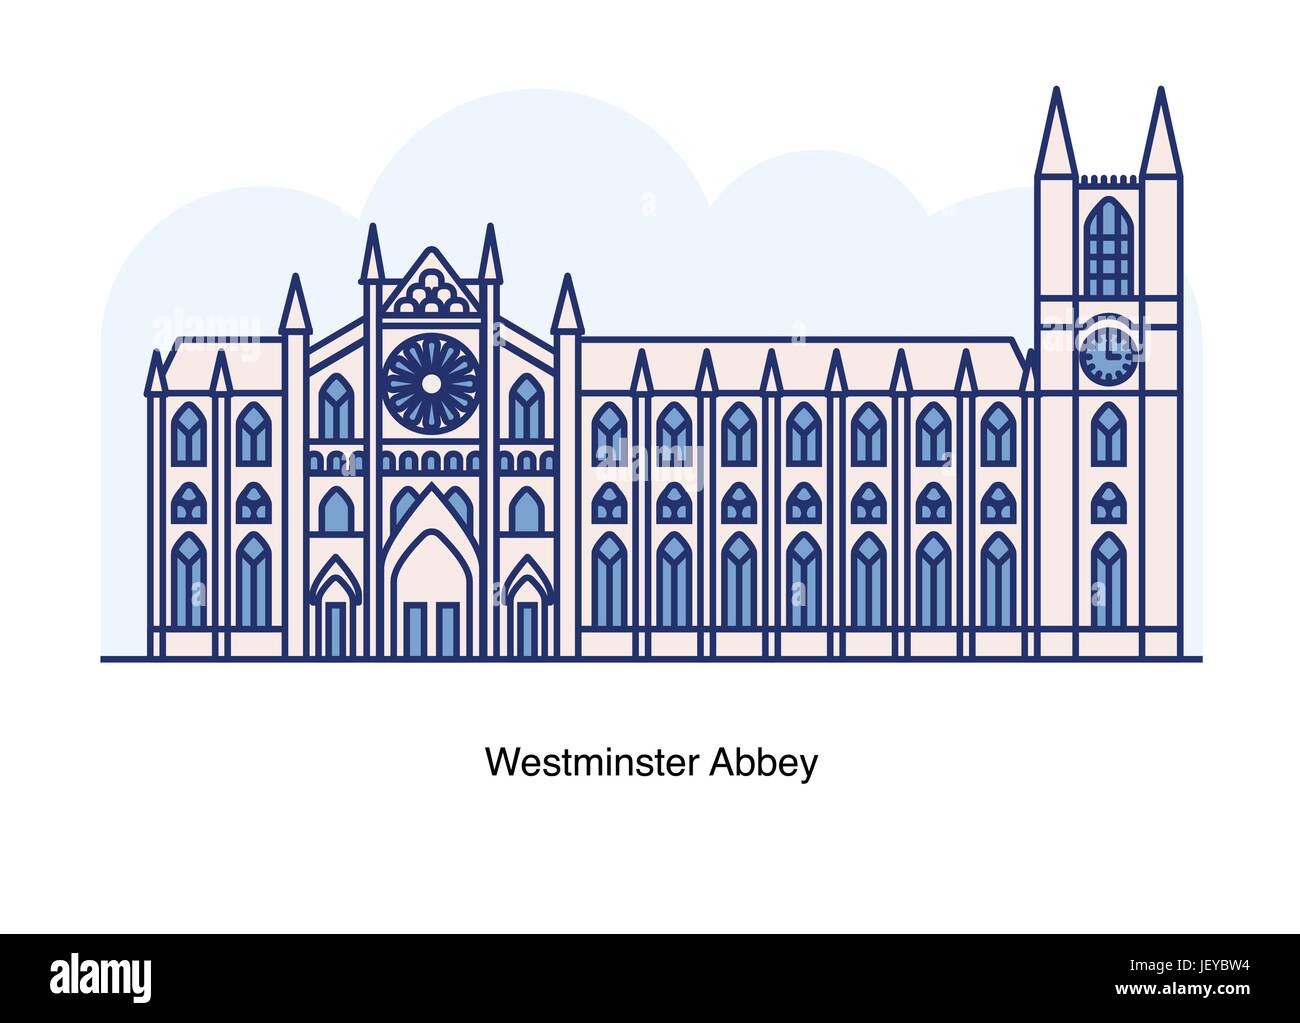 Vektorgrafik-Linie von Westminster Abbey, London, England. Stock Vektor